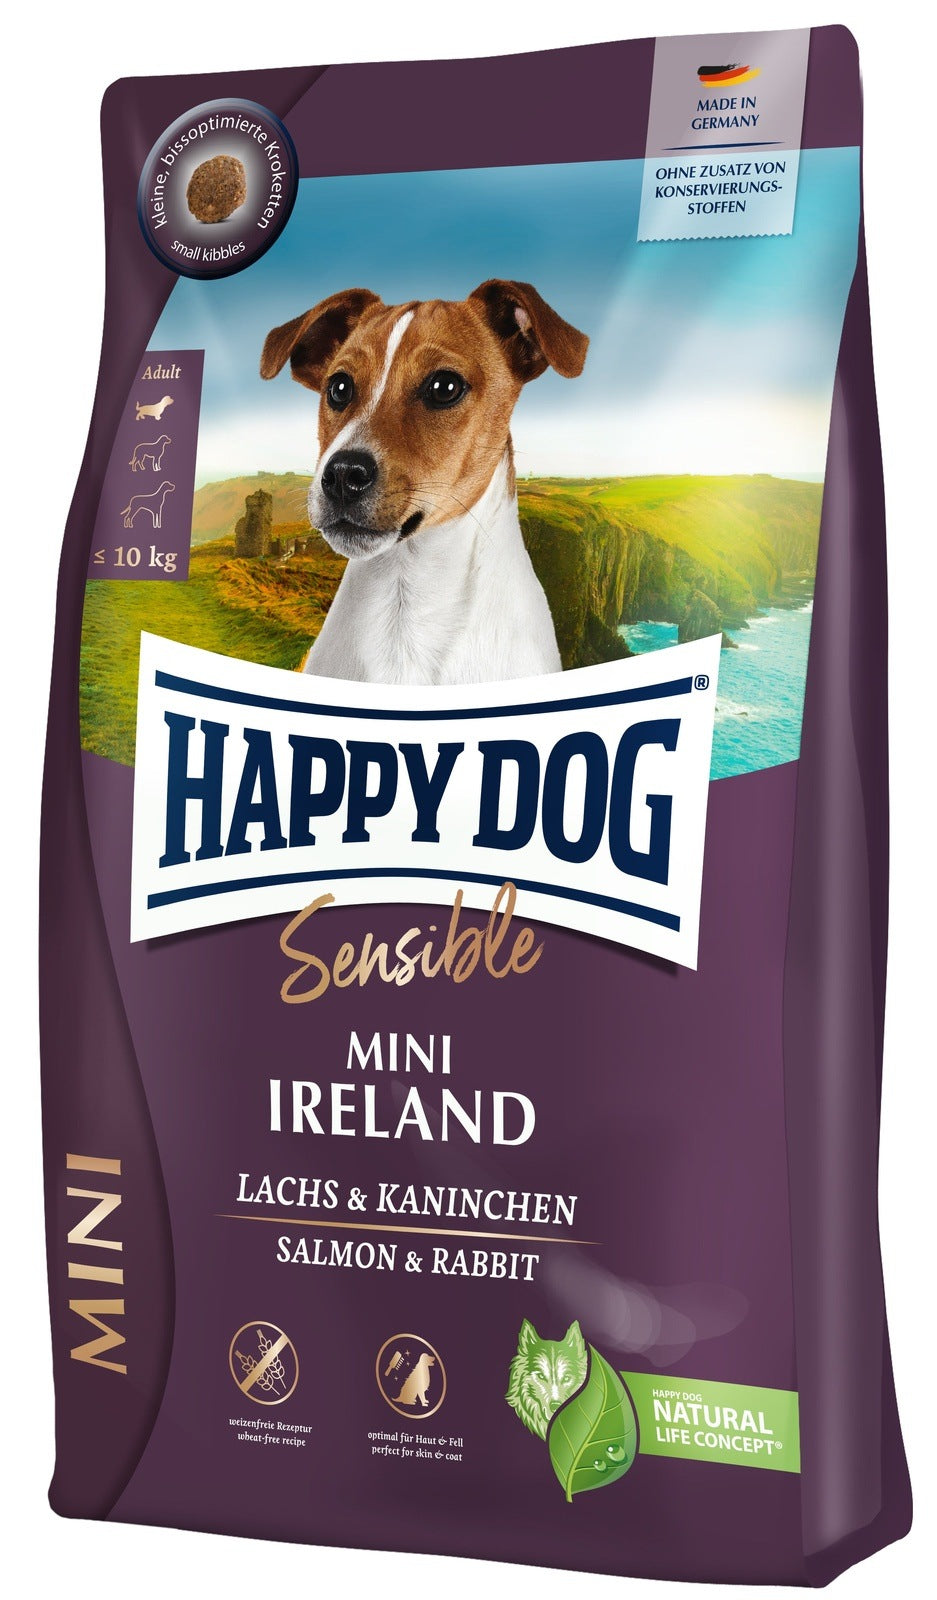 Artikel mit dem Namen Happy Dog Sensible Mini Ireland im Shop von zoo.de , dem Onlineshop für nachhaltiges Hundefutter und Katzenfutter.